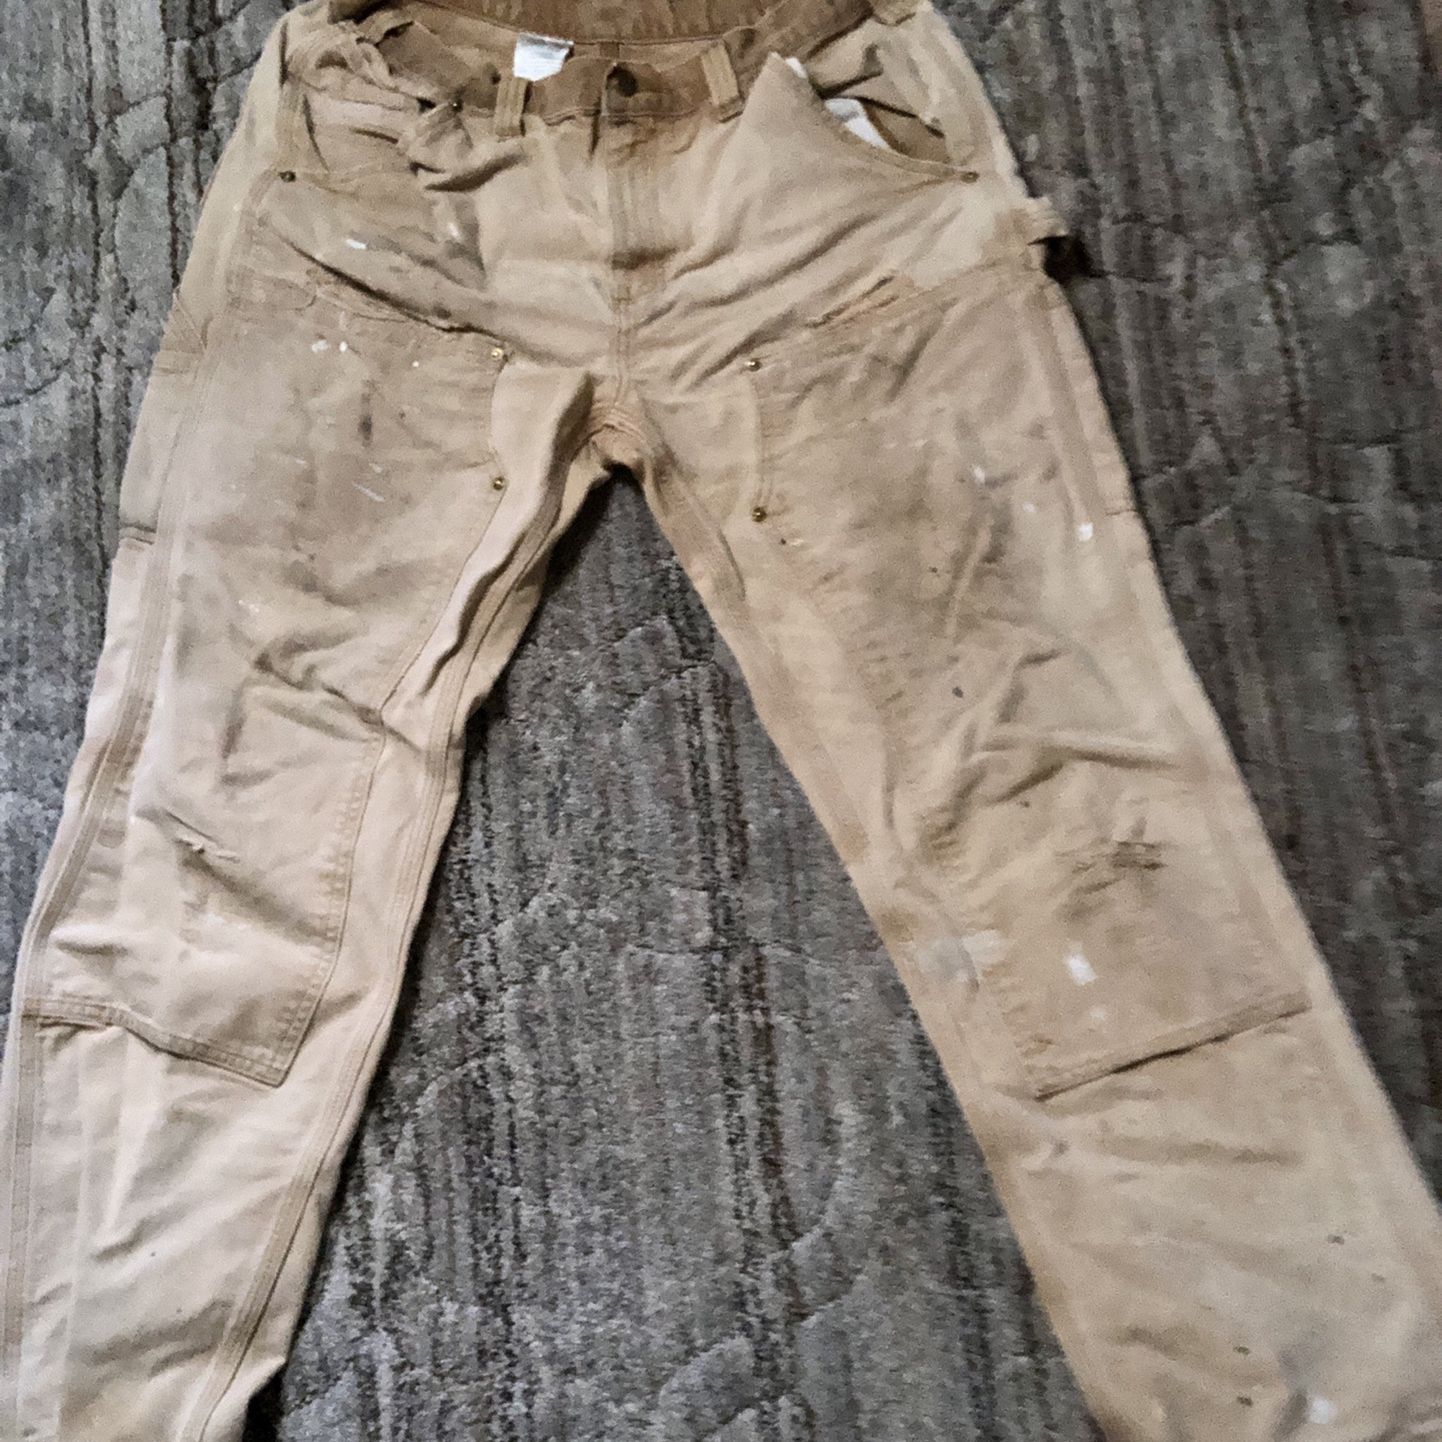 Carhartt Pants Men 30x32 for Sale in Alexandria, VA - OfferUp